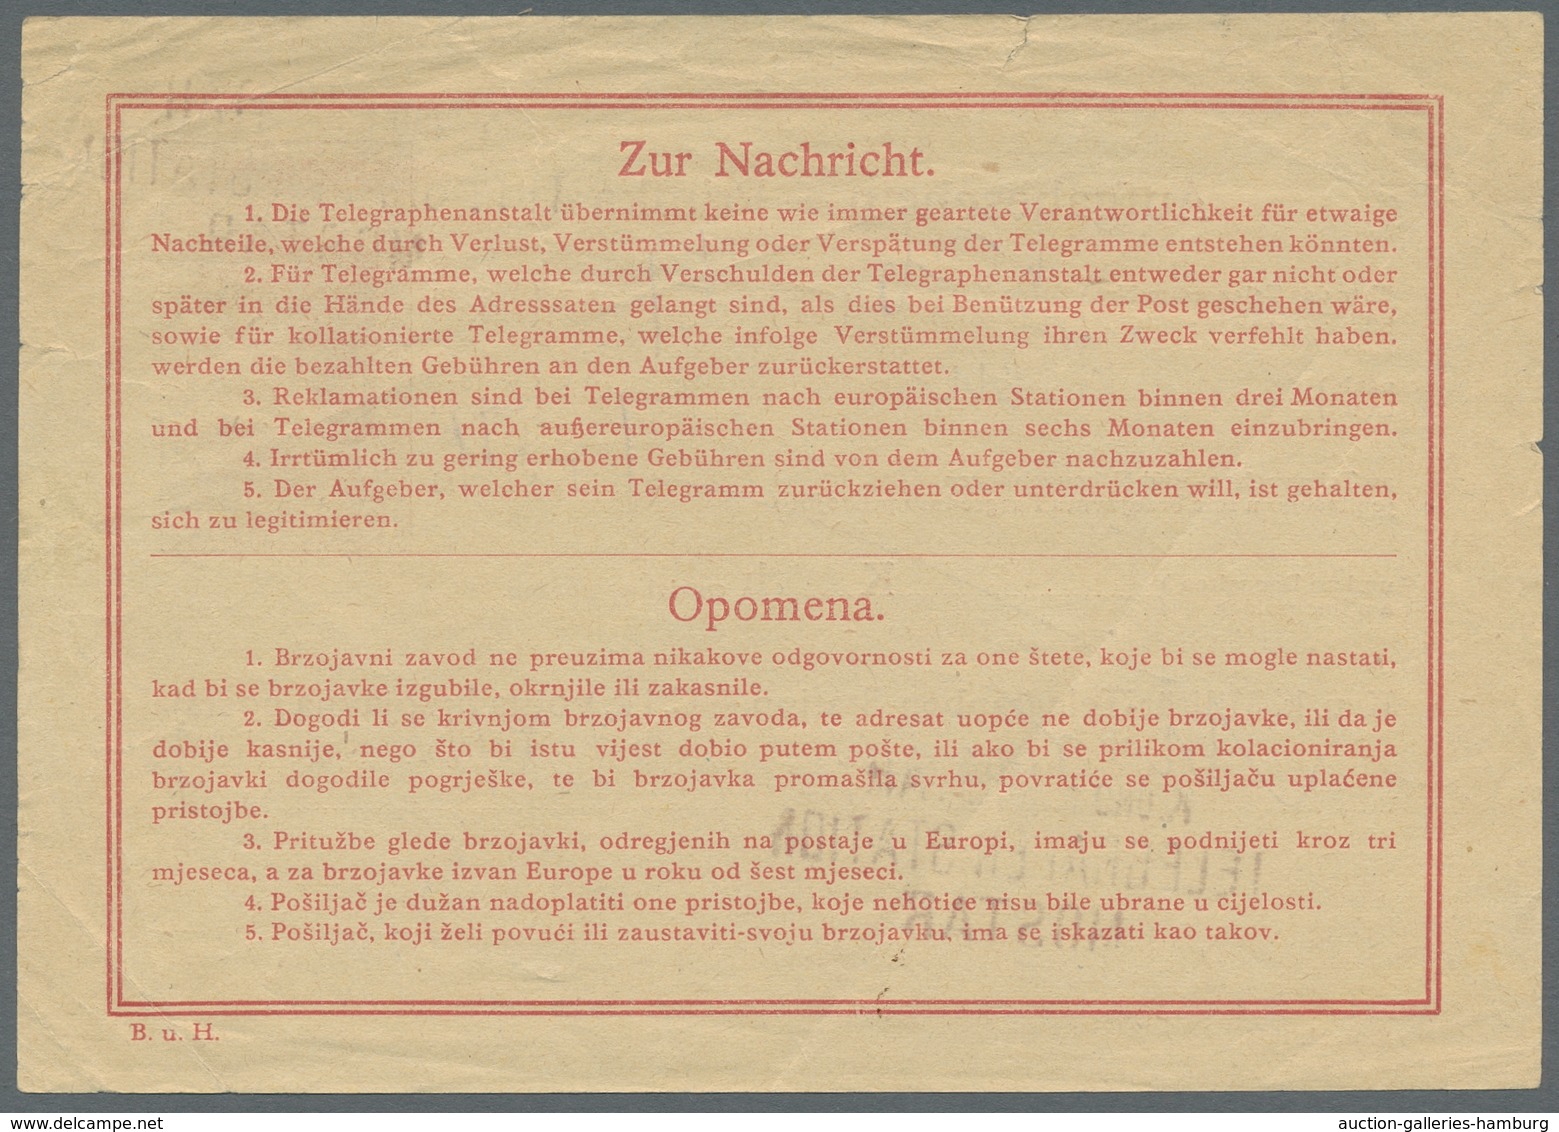 Bosnien und Herzegowina (Österreich 1879/1918) - Portomarken: 1894-1918, hochwertige Sammlung der Po